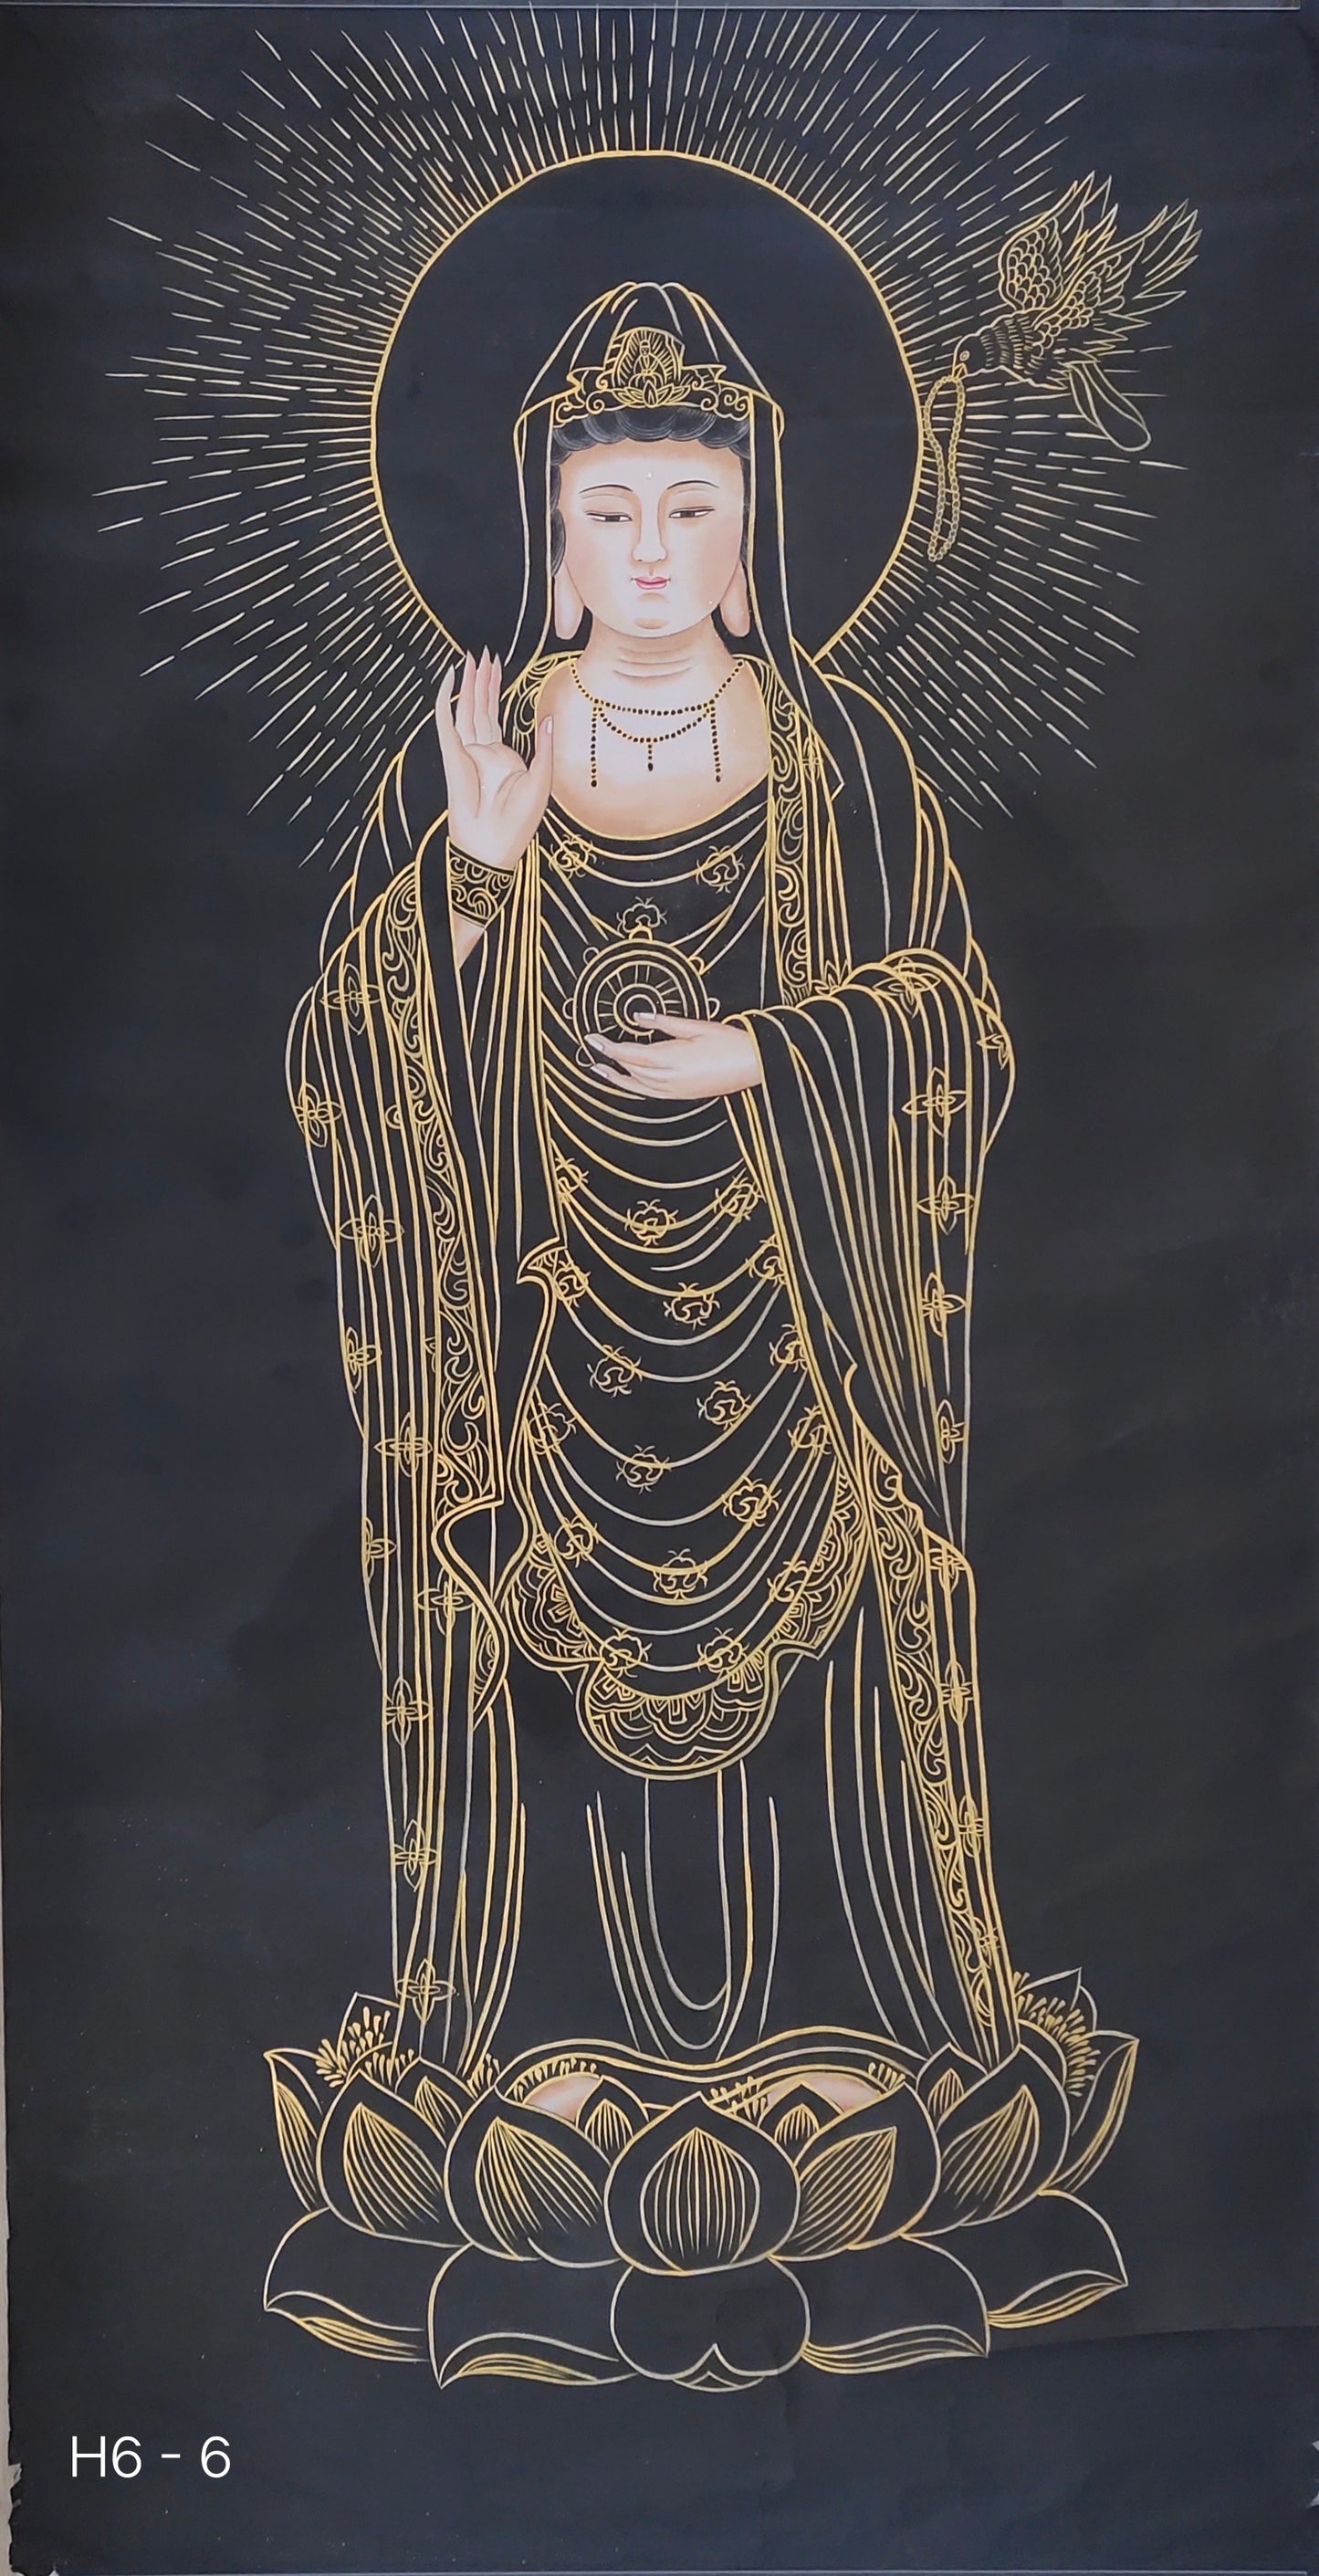 Chinese Painting-  Guanyin,Buddha.  Buddhism decoration